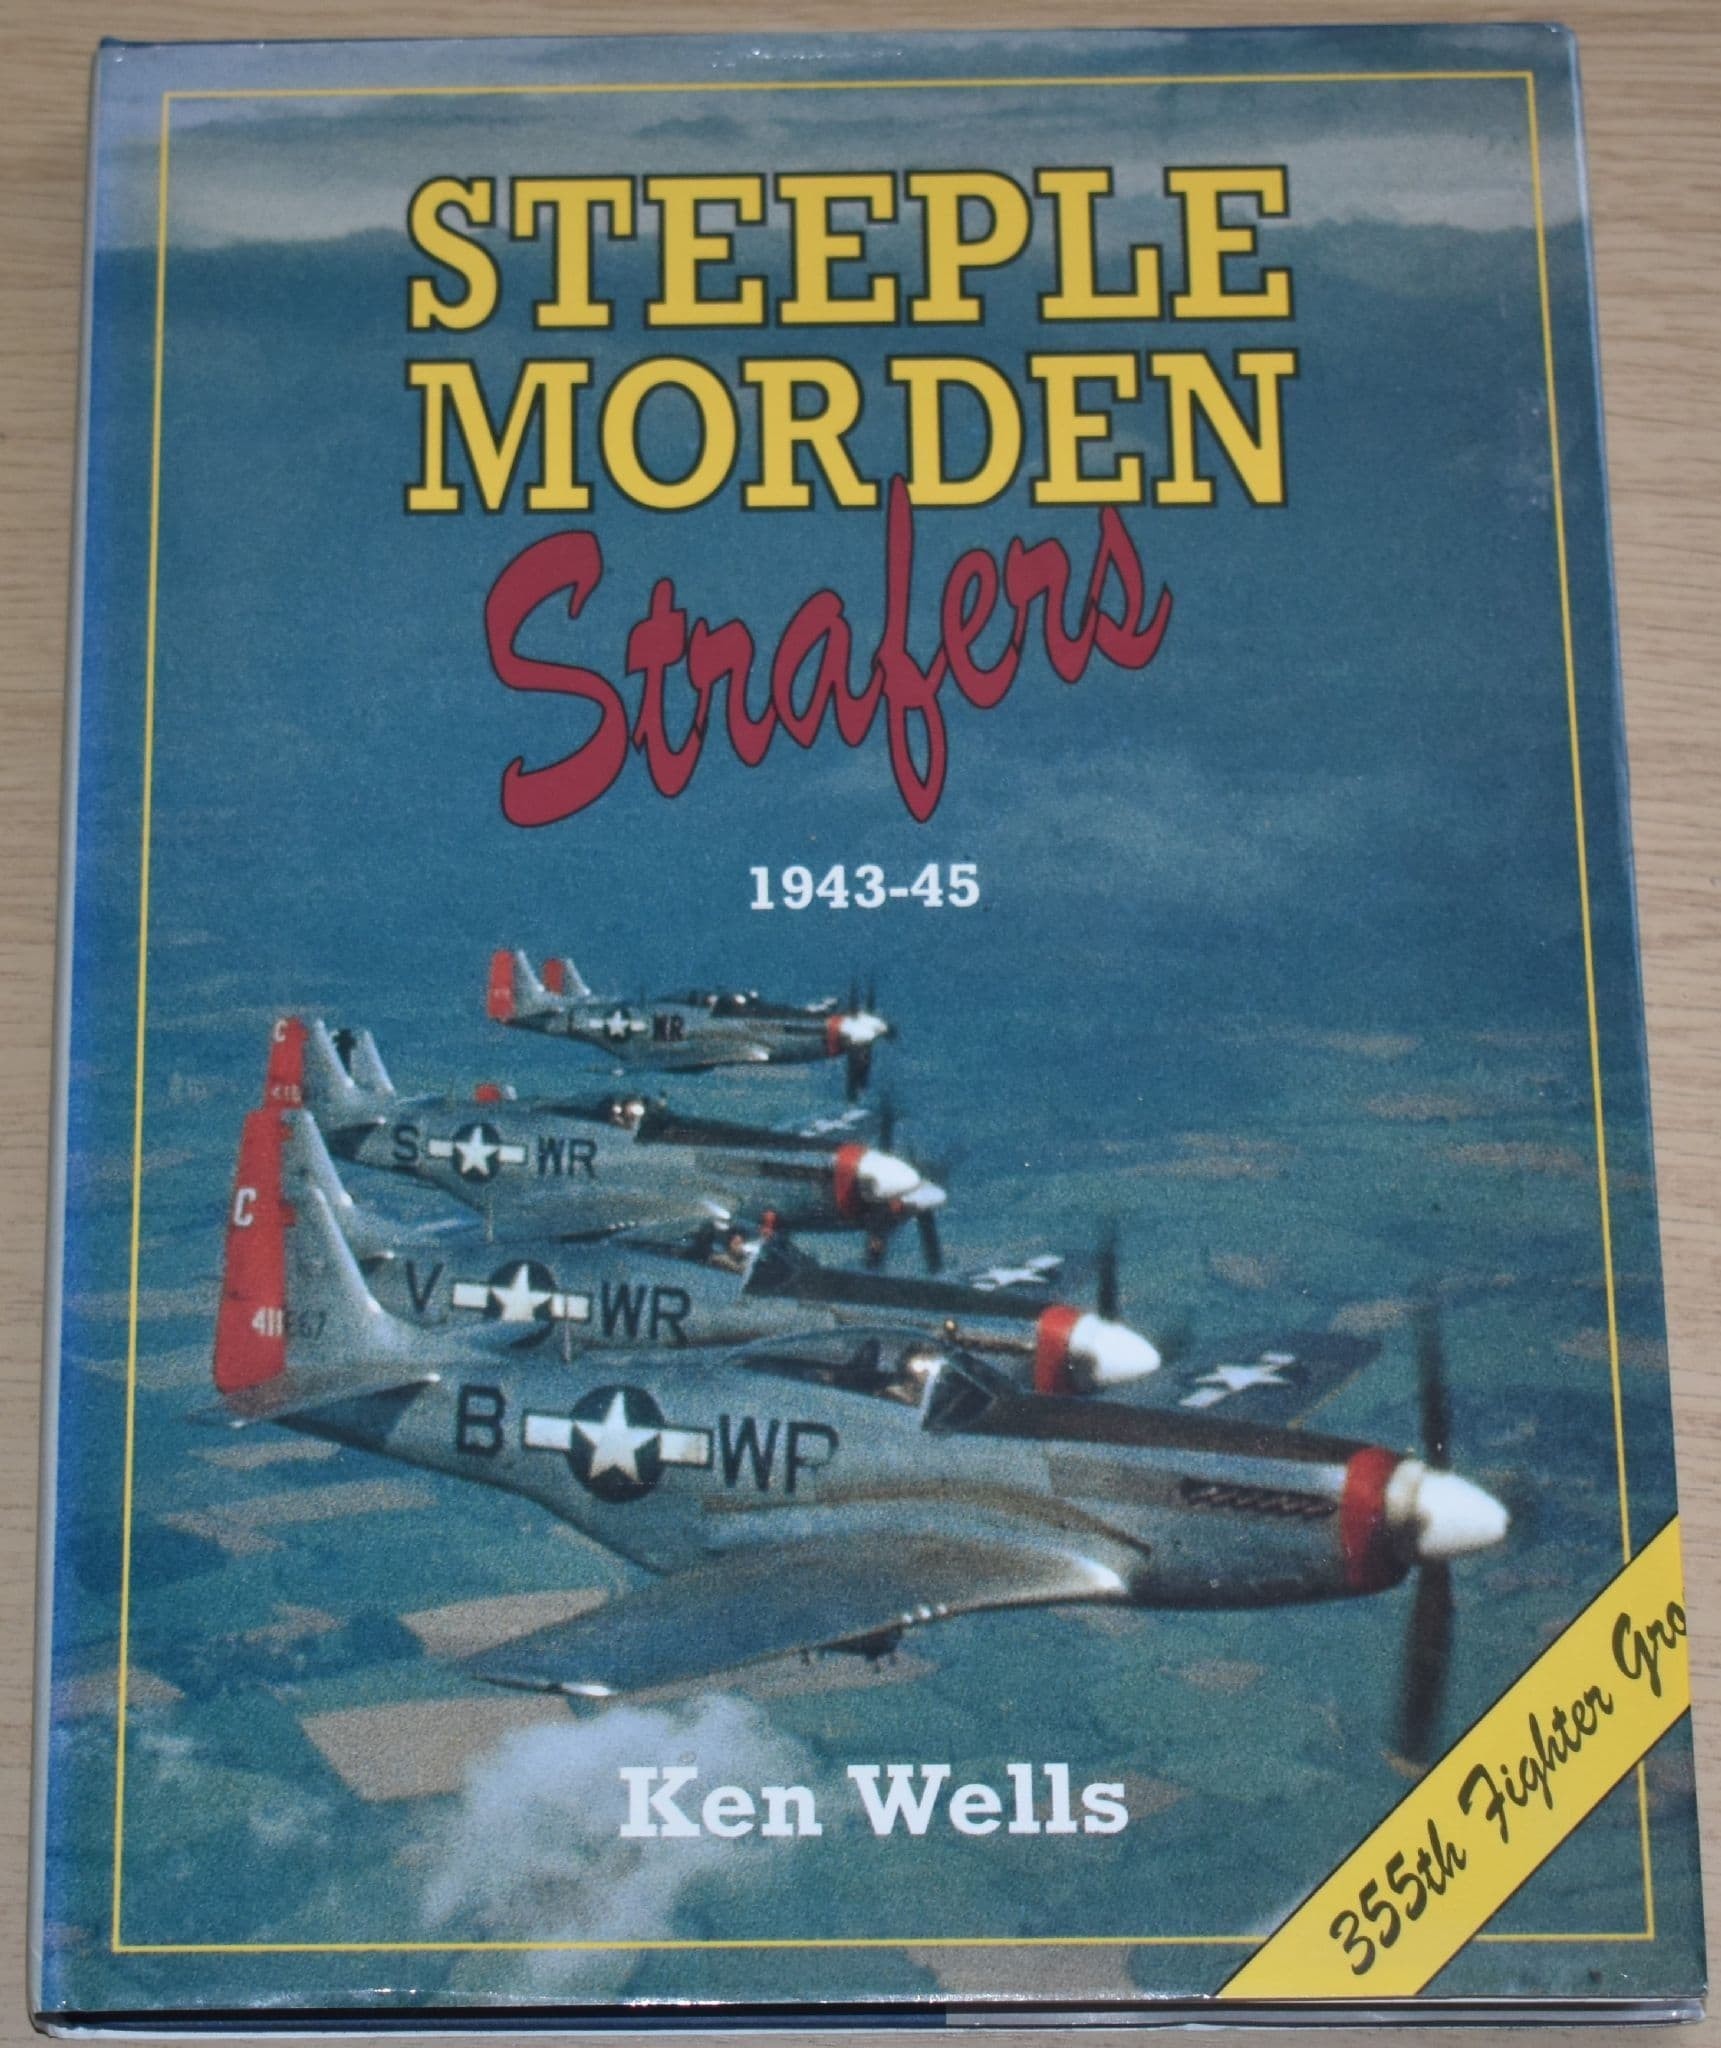 Steeple Morden Strafers (1943-45)